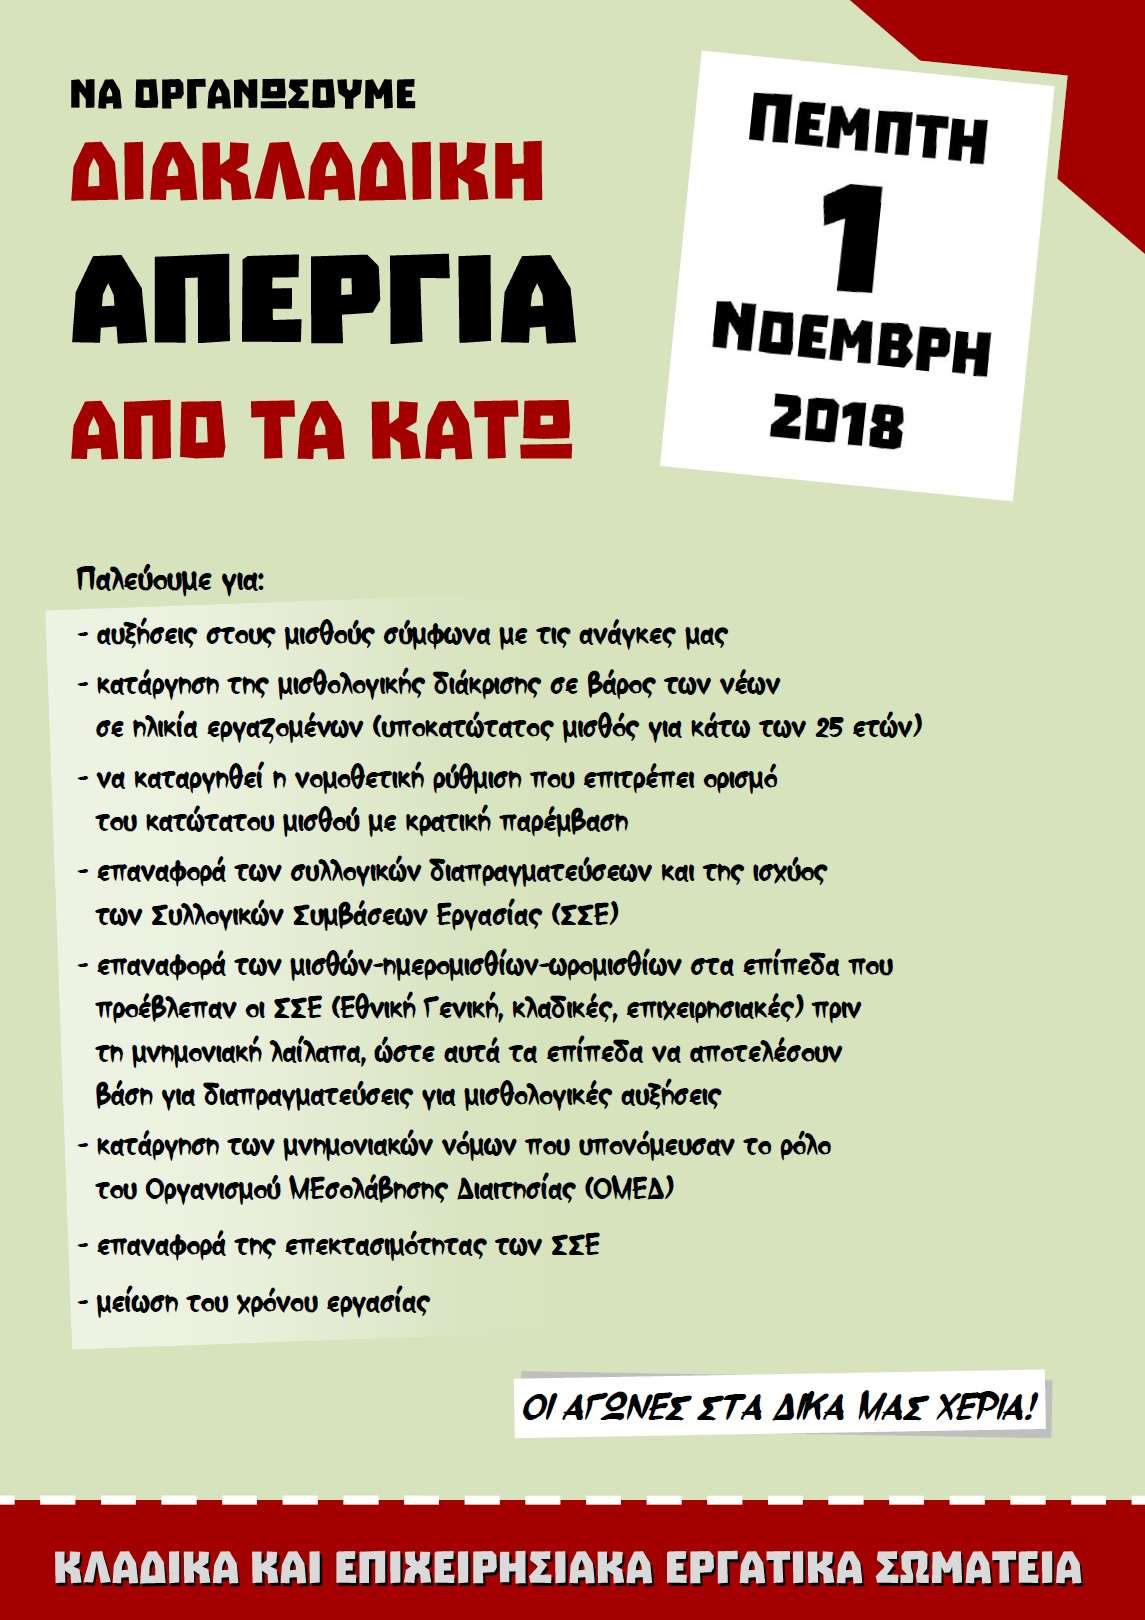 Αθήνα: Σύσκεψη εργατικών σωματείων για οργάνωση διακλαδικής απεργίας